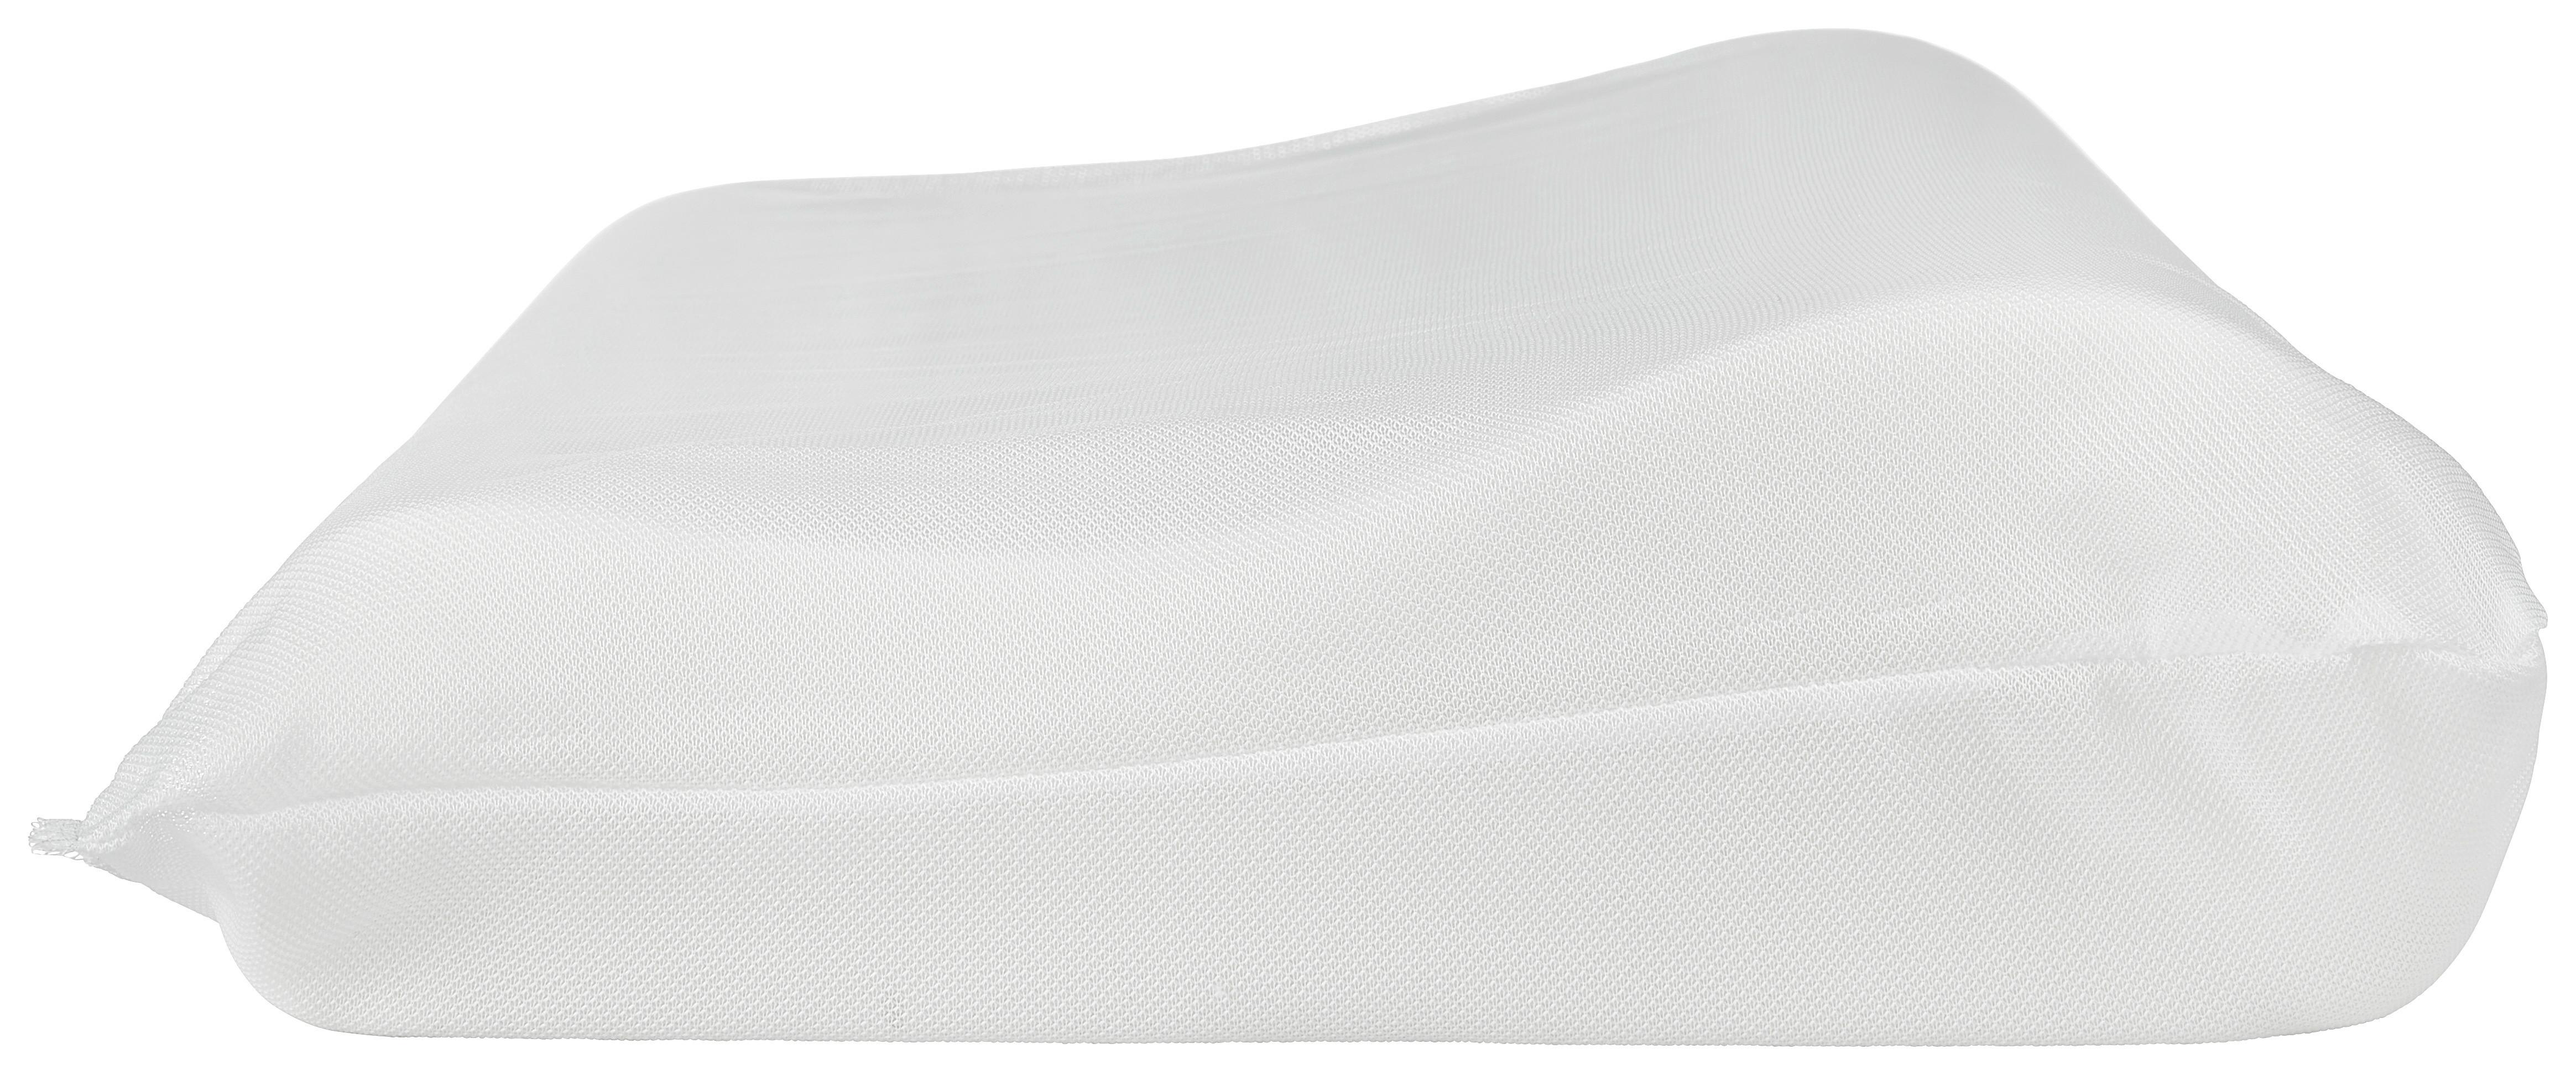 Nackenkissen Brigitta 50x30 cm Füllung: Polyester - Weiß, KONVENTIONELL, Textil (50/30/10/7cm) - Primatex